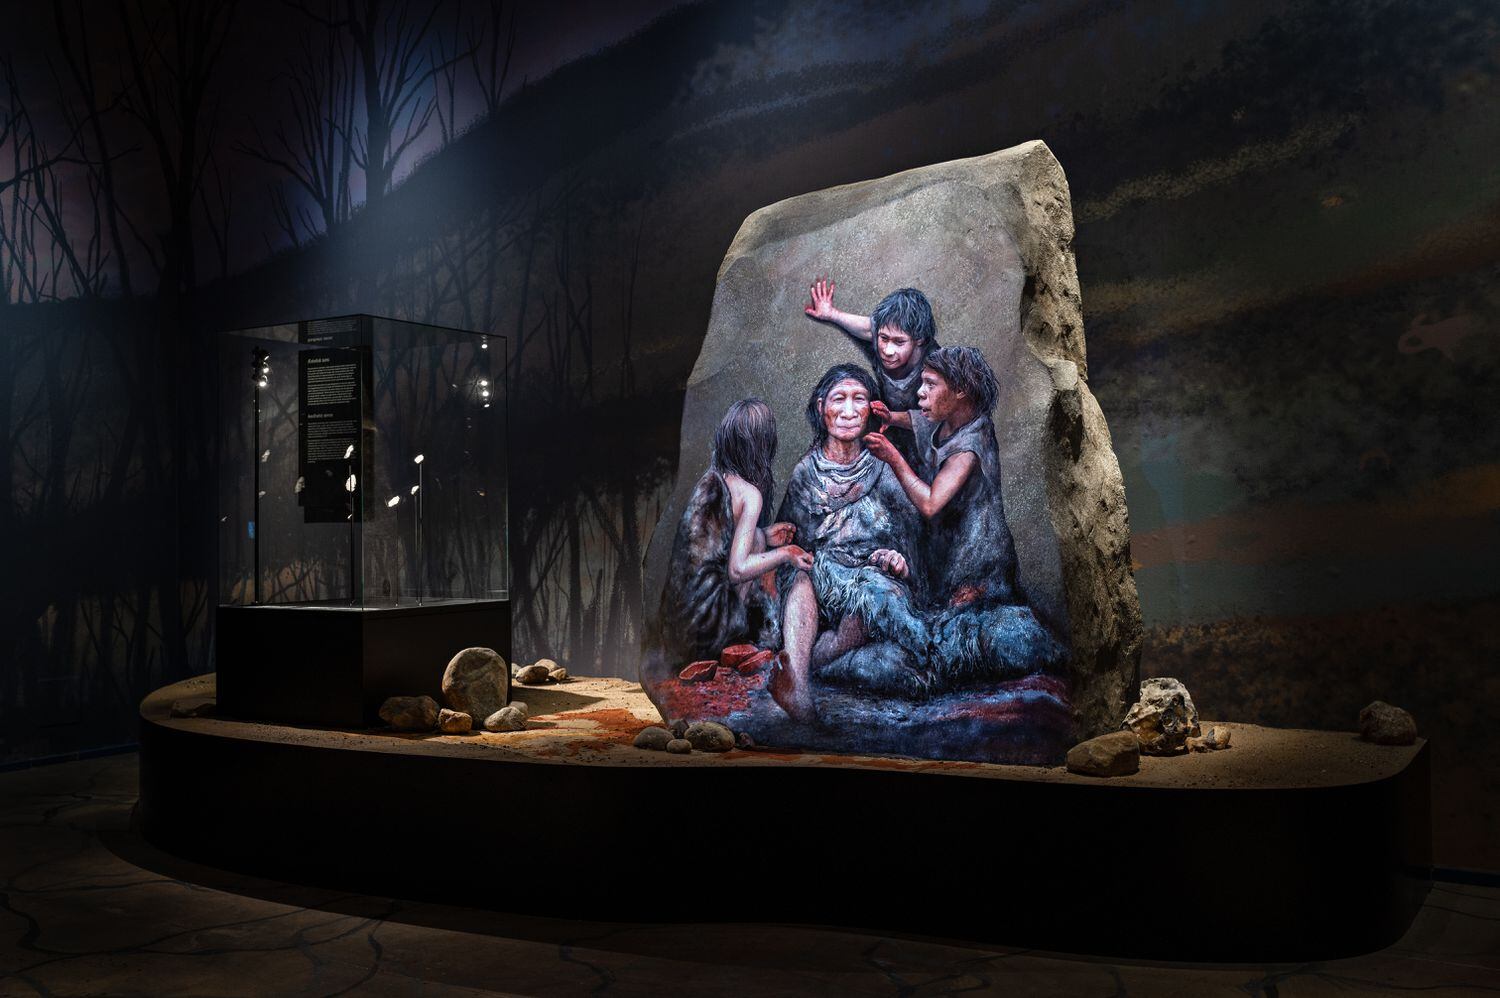 Exposición sobre neandertales en el museo de Moesgaard. / Museo de Moesgaard / Neandertal exhibition